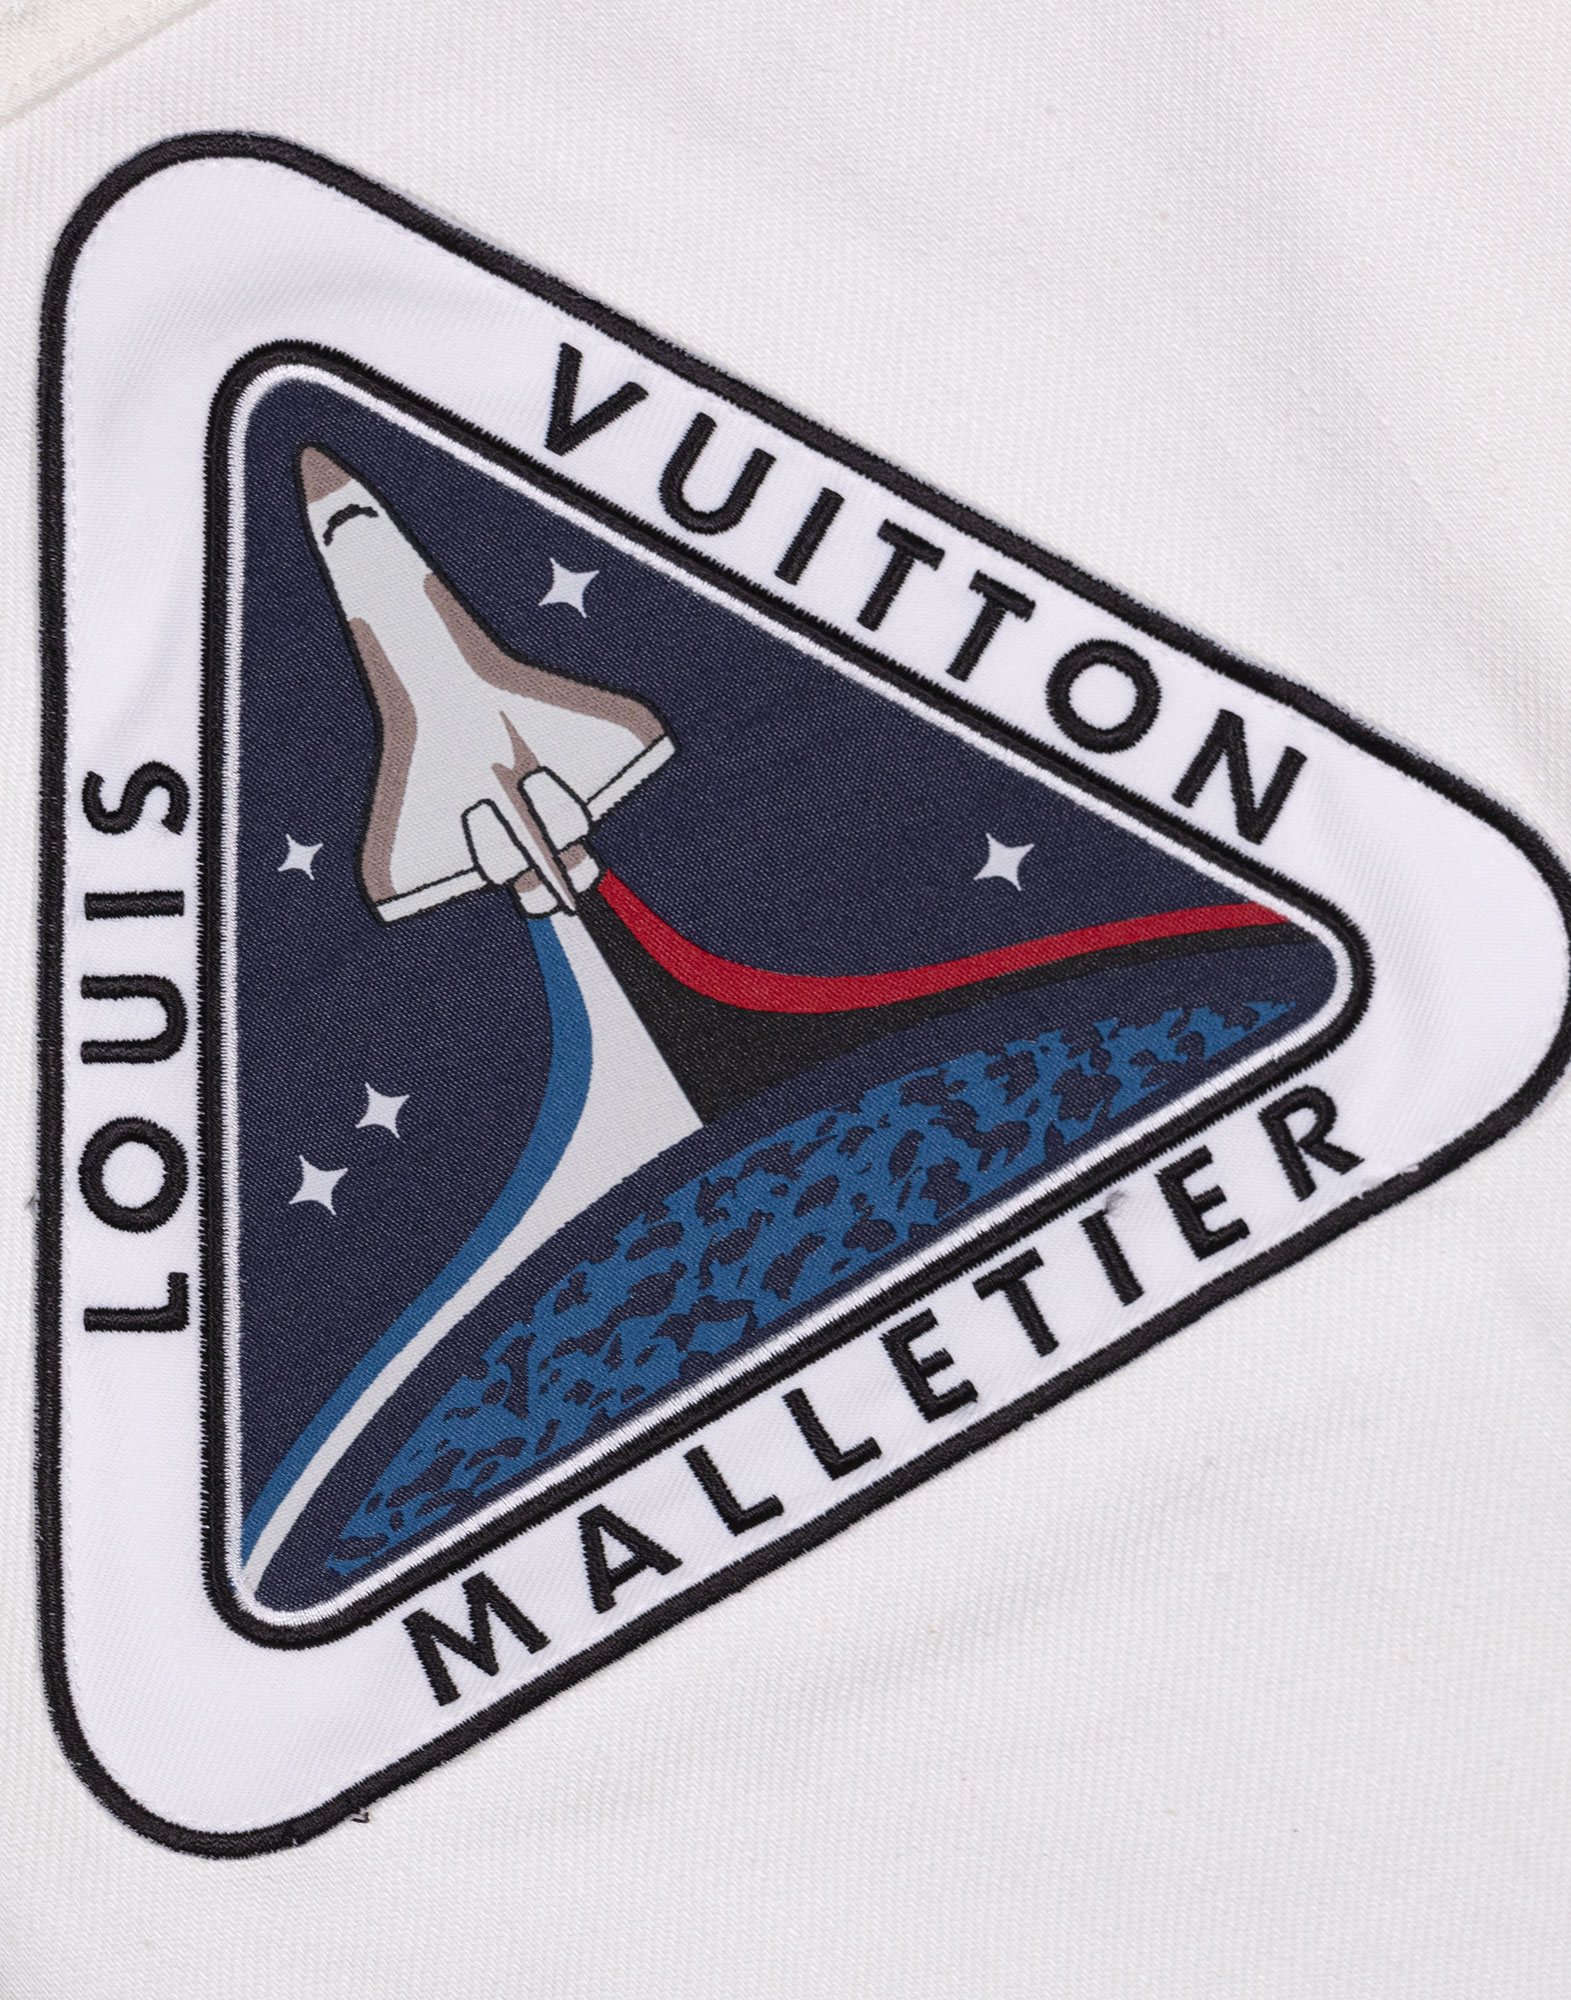 Louis Vuitton - Denim jacket 2019 collection